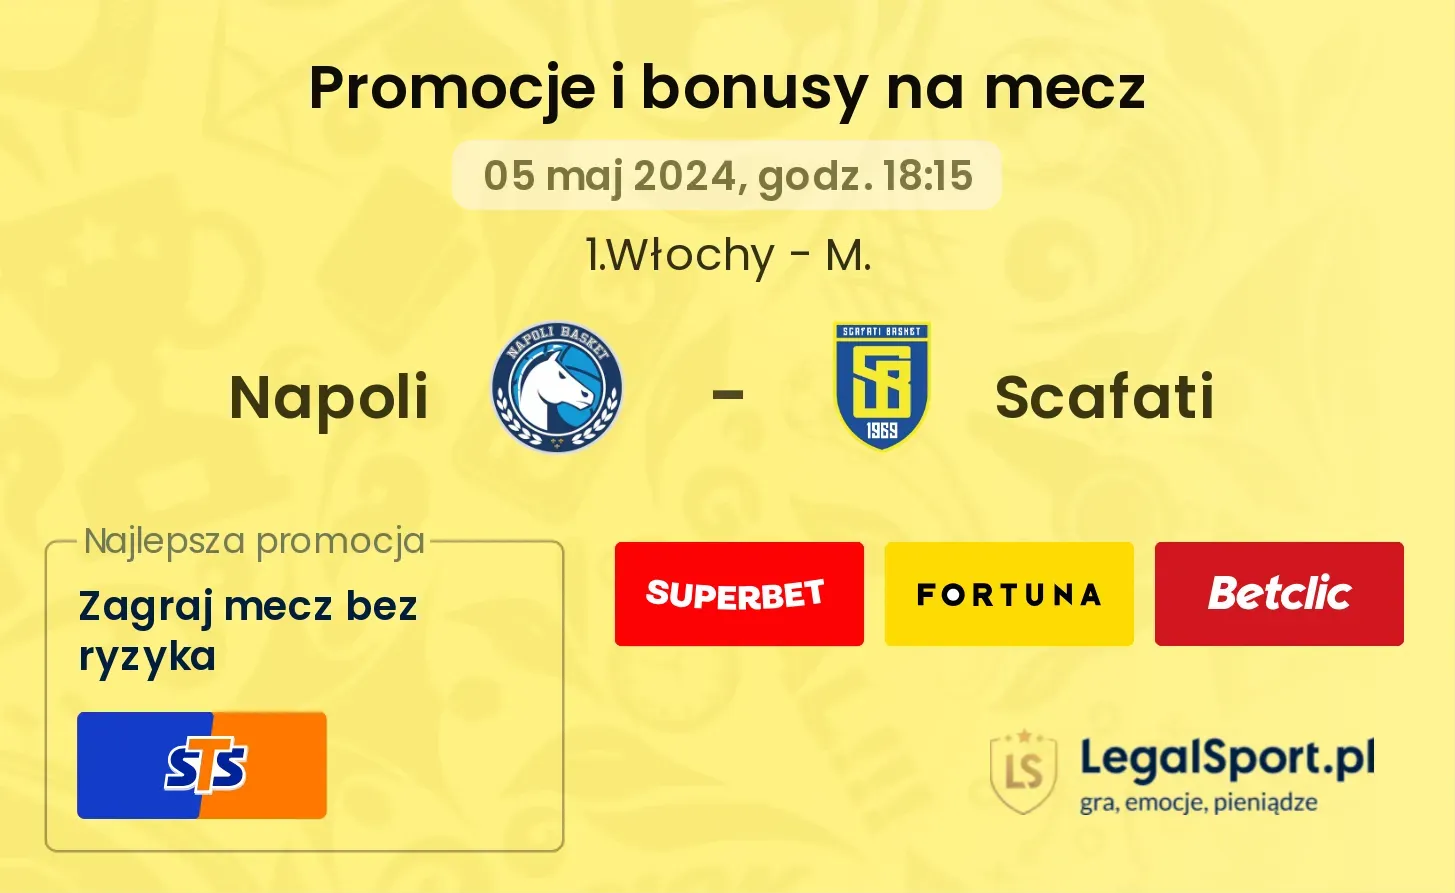 Napoli - Scafati promocje bonusy na mecz